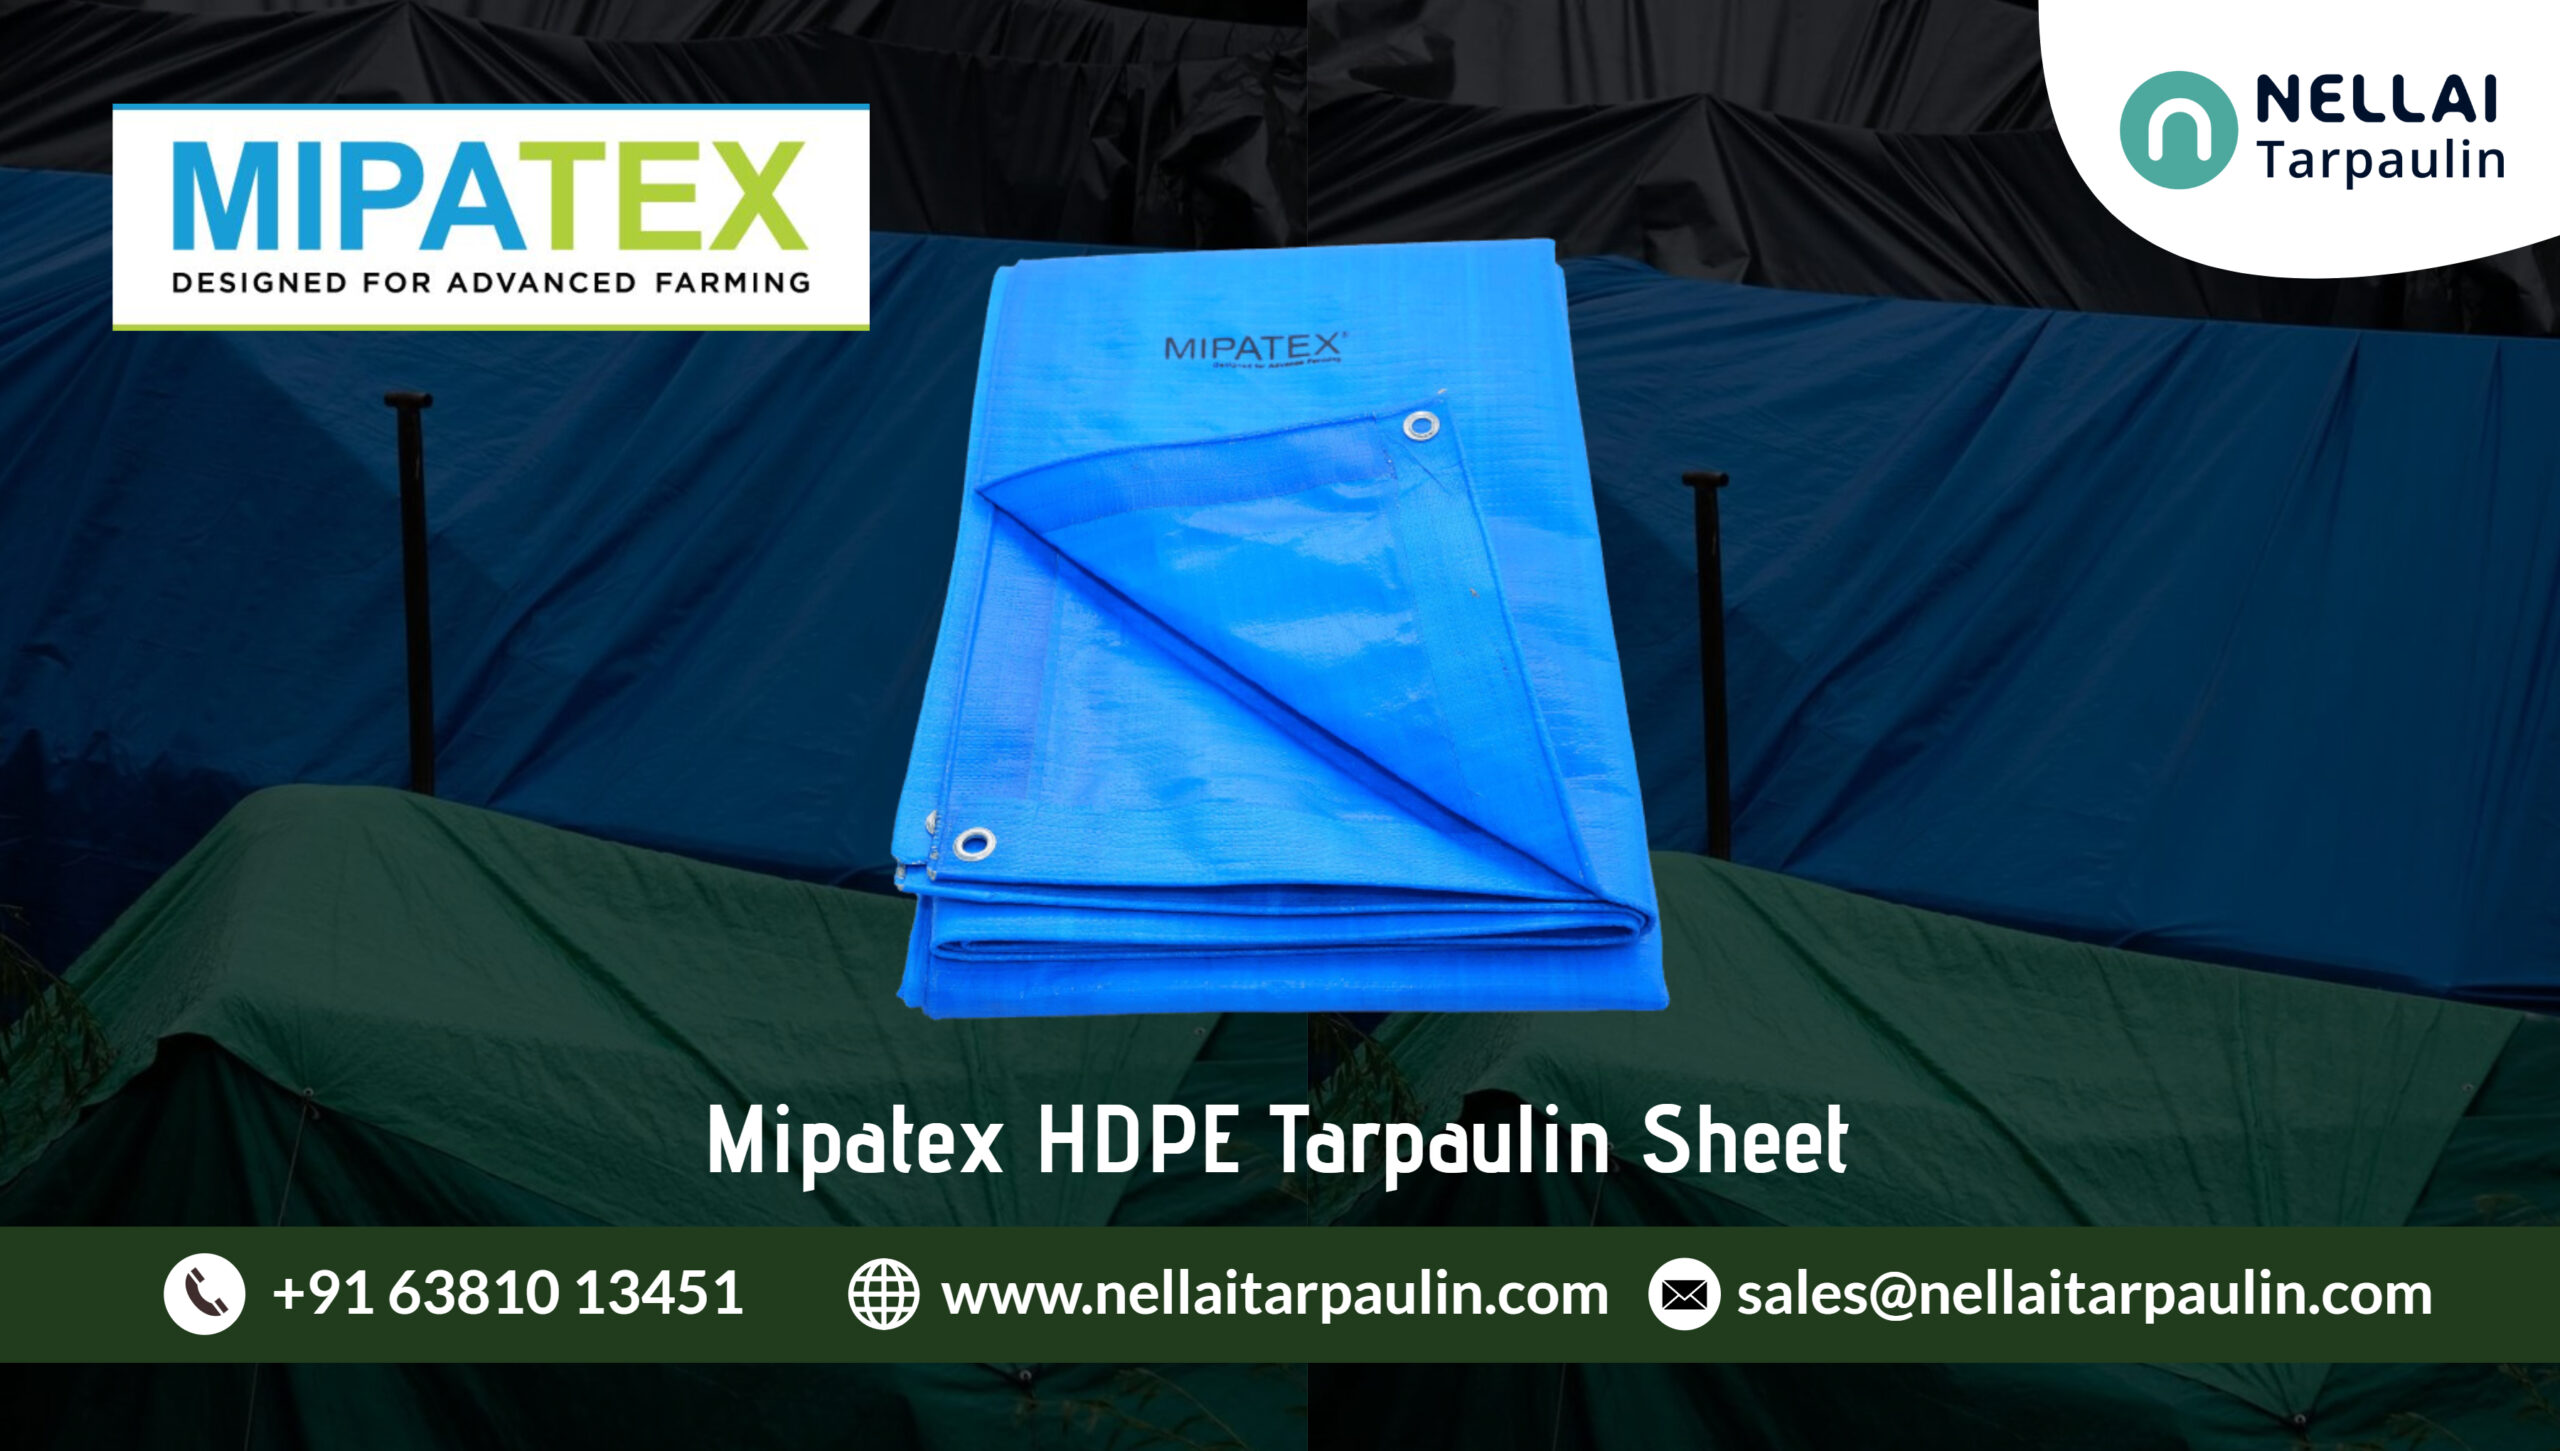 Mipatex HDPE Tarpaulin Sheet